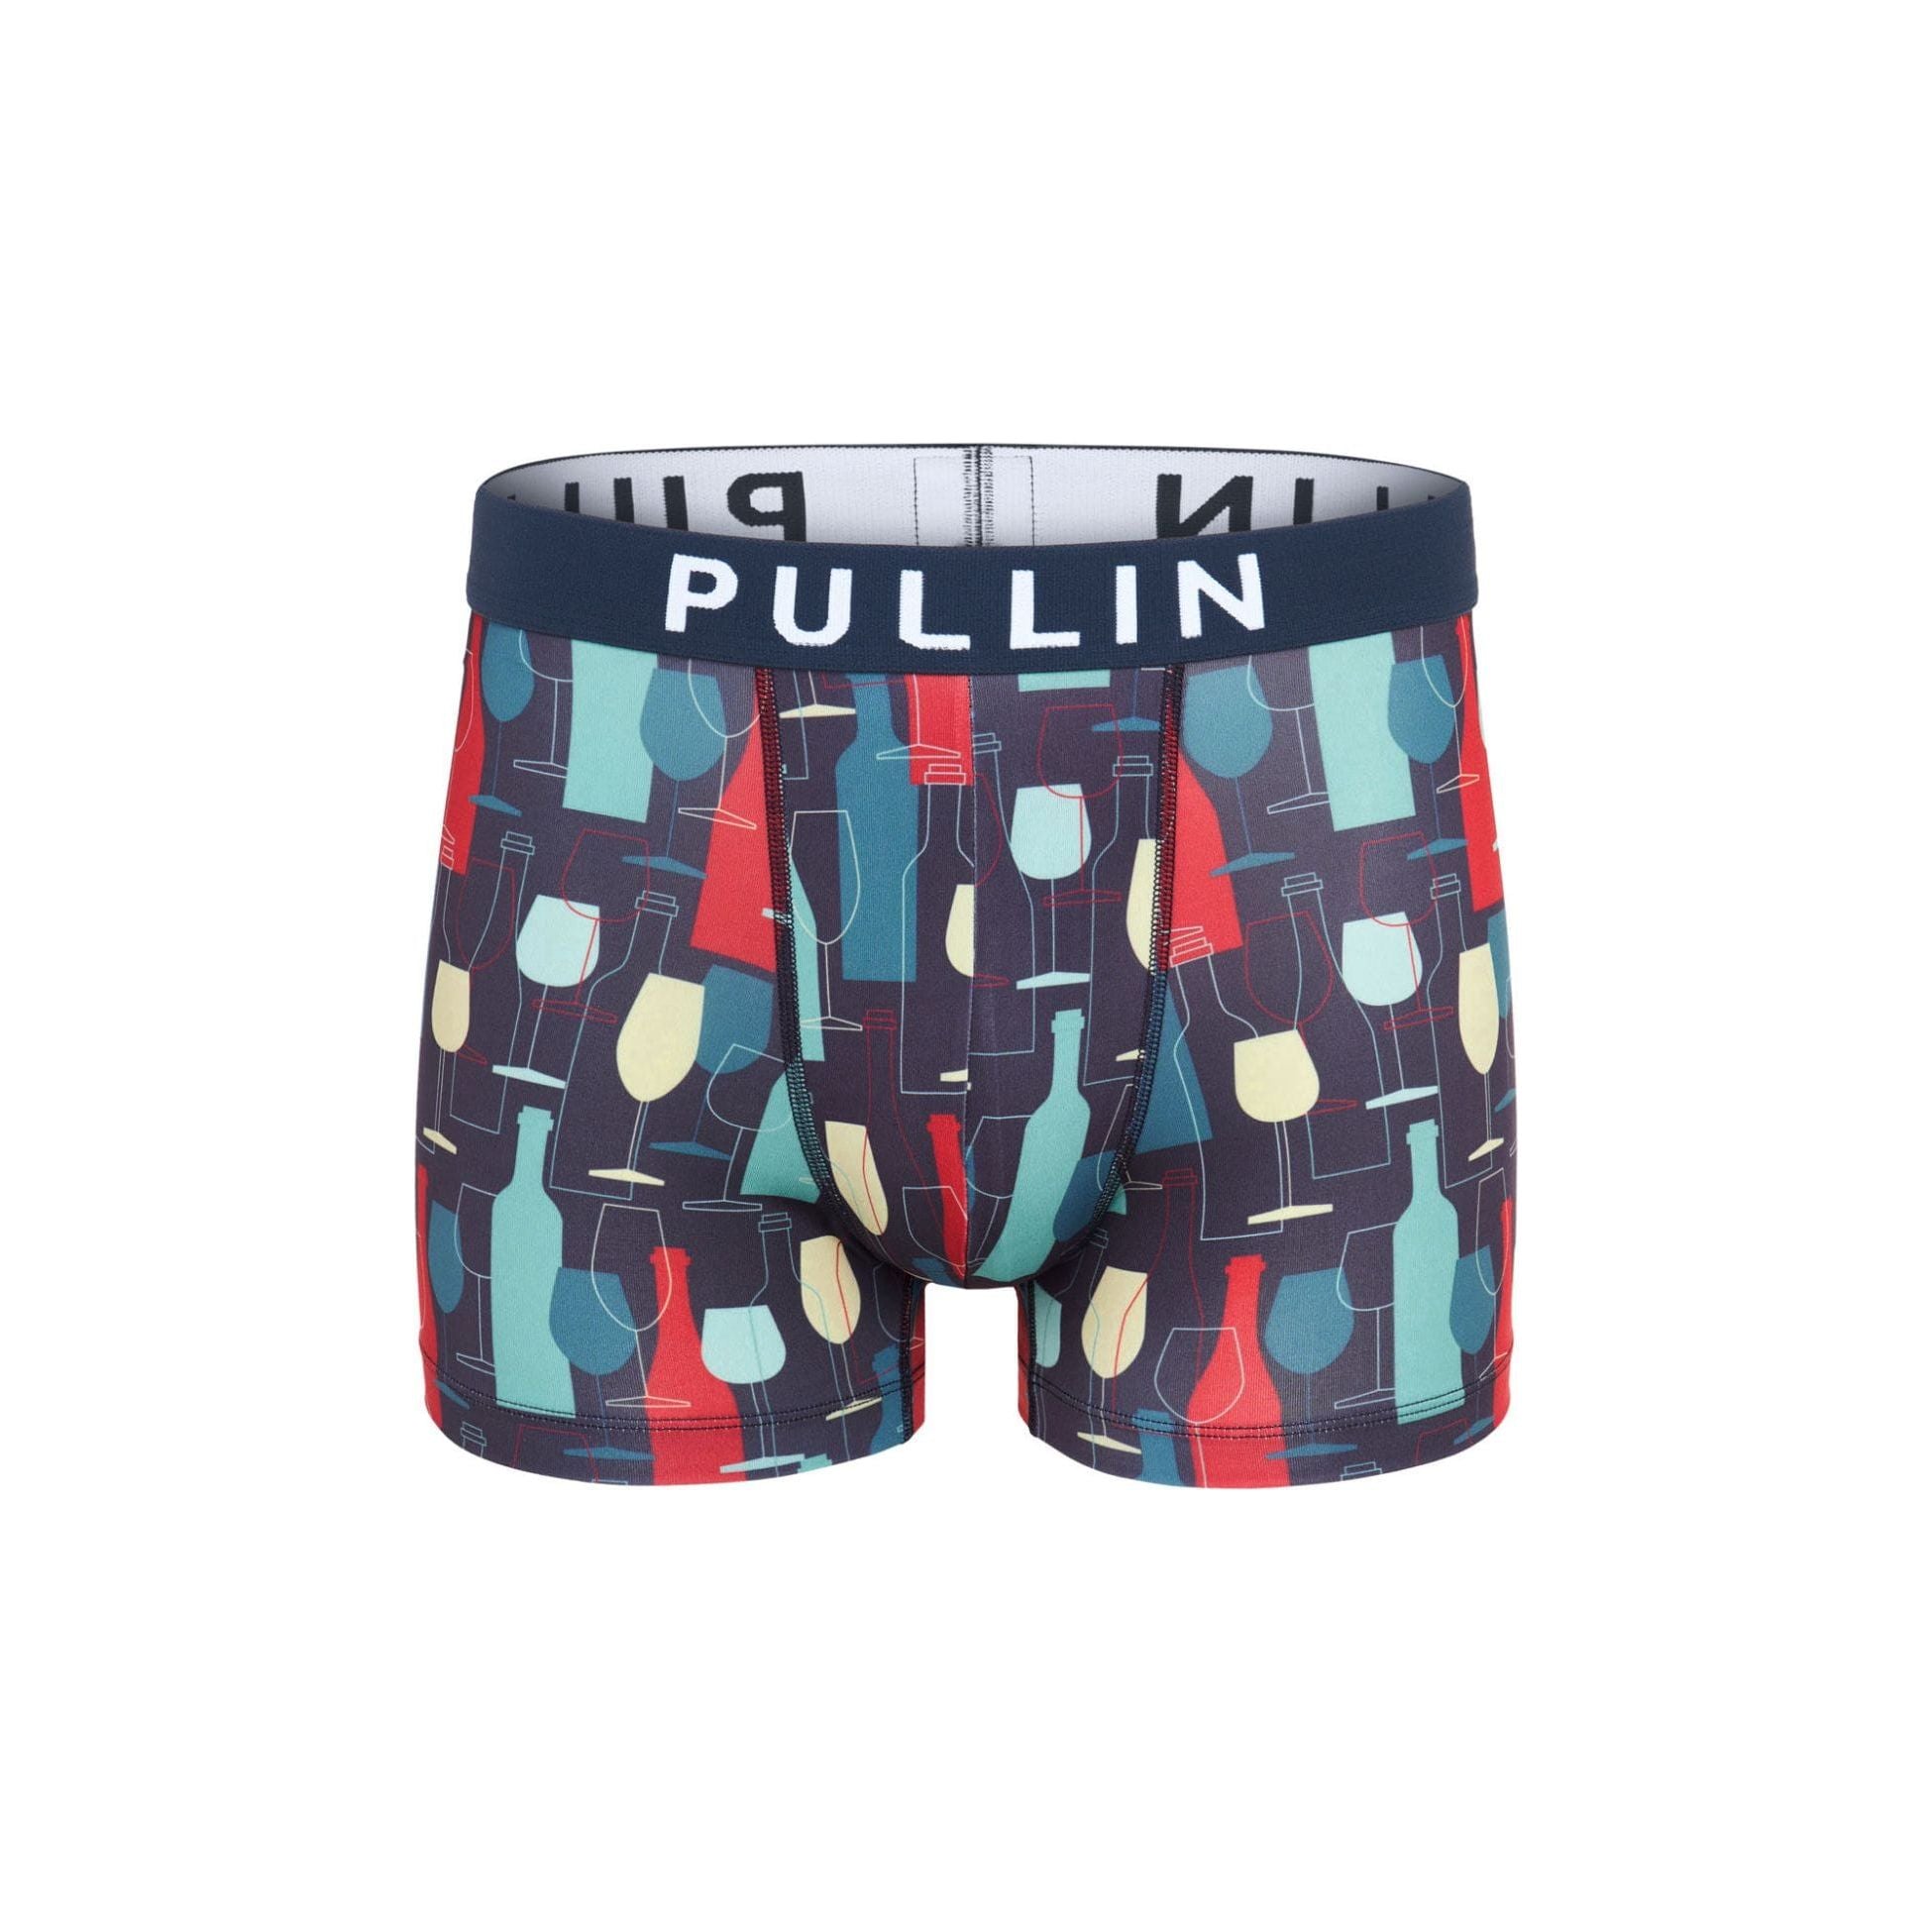 Pullin - Underground Clothing